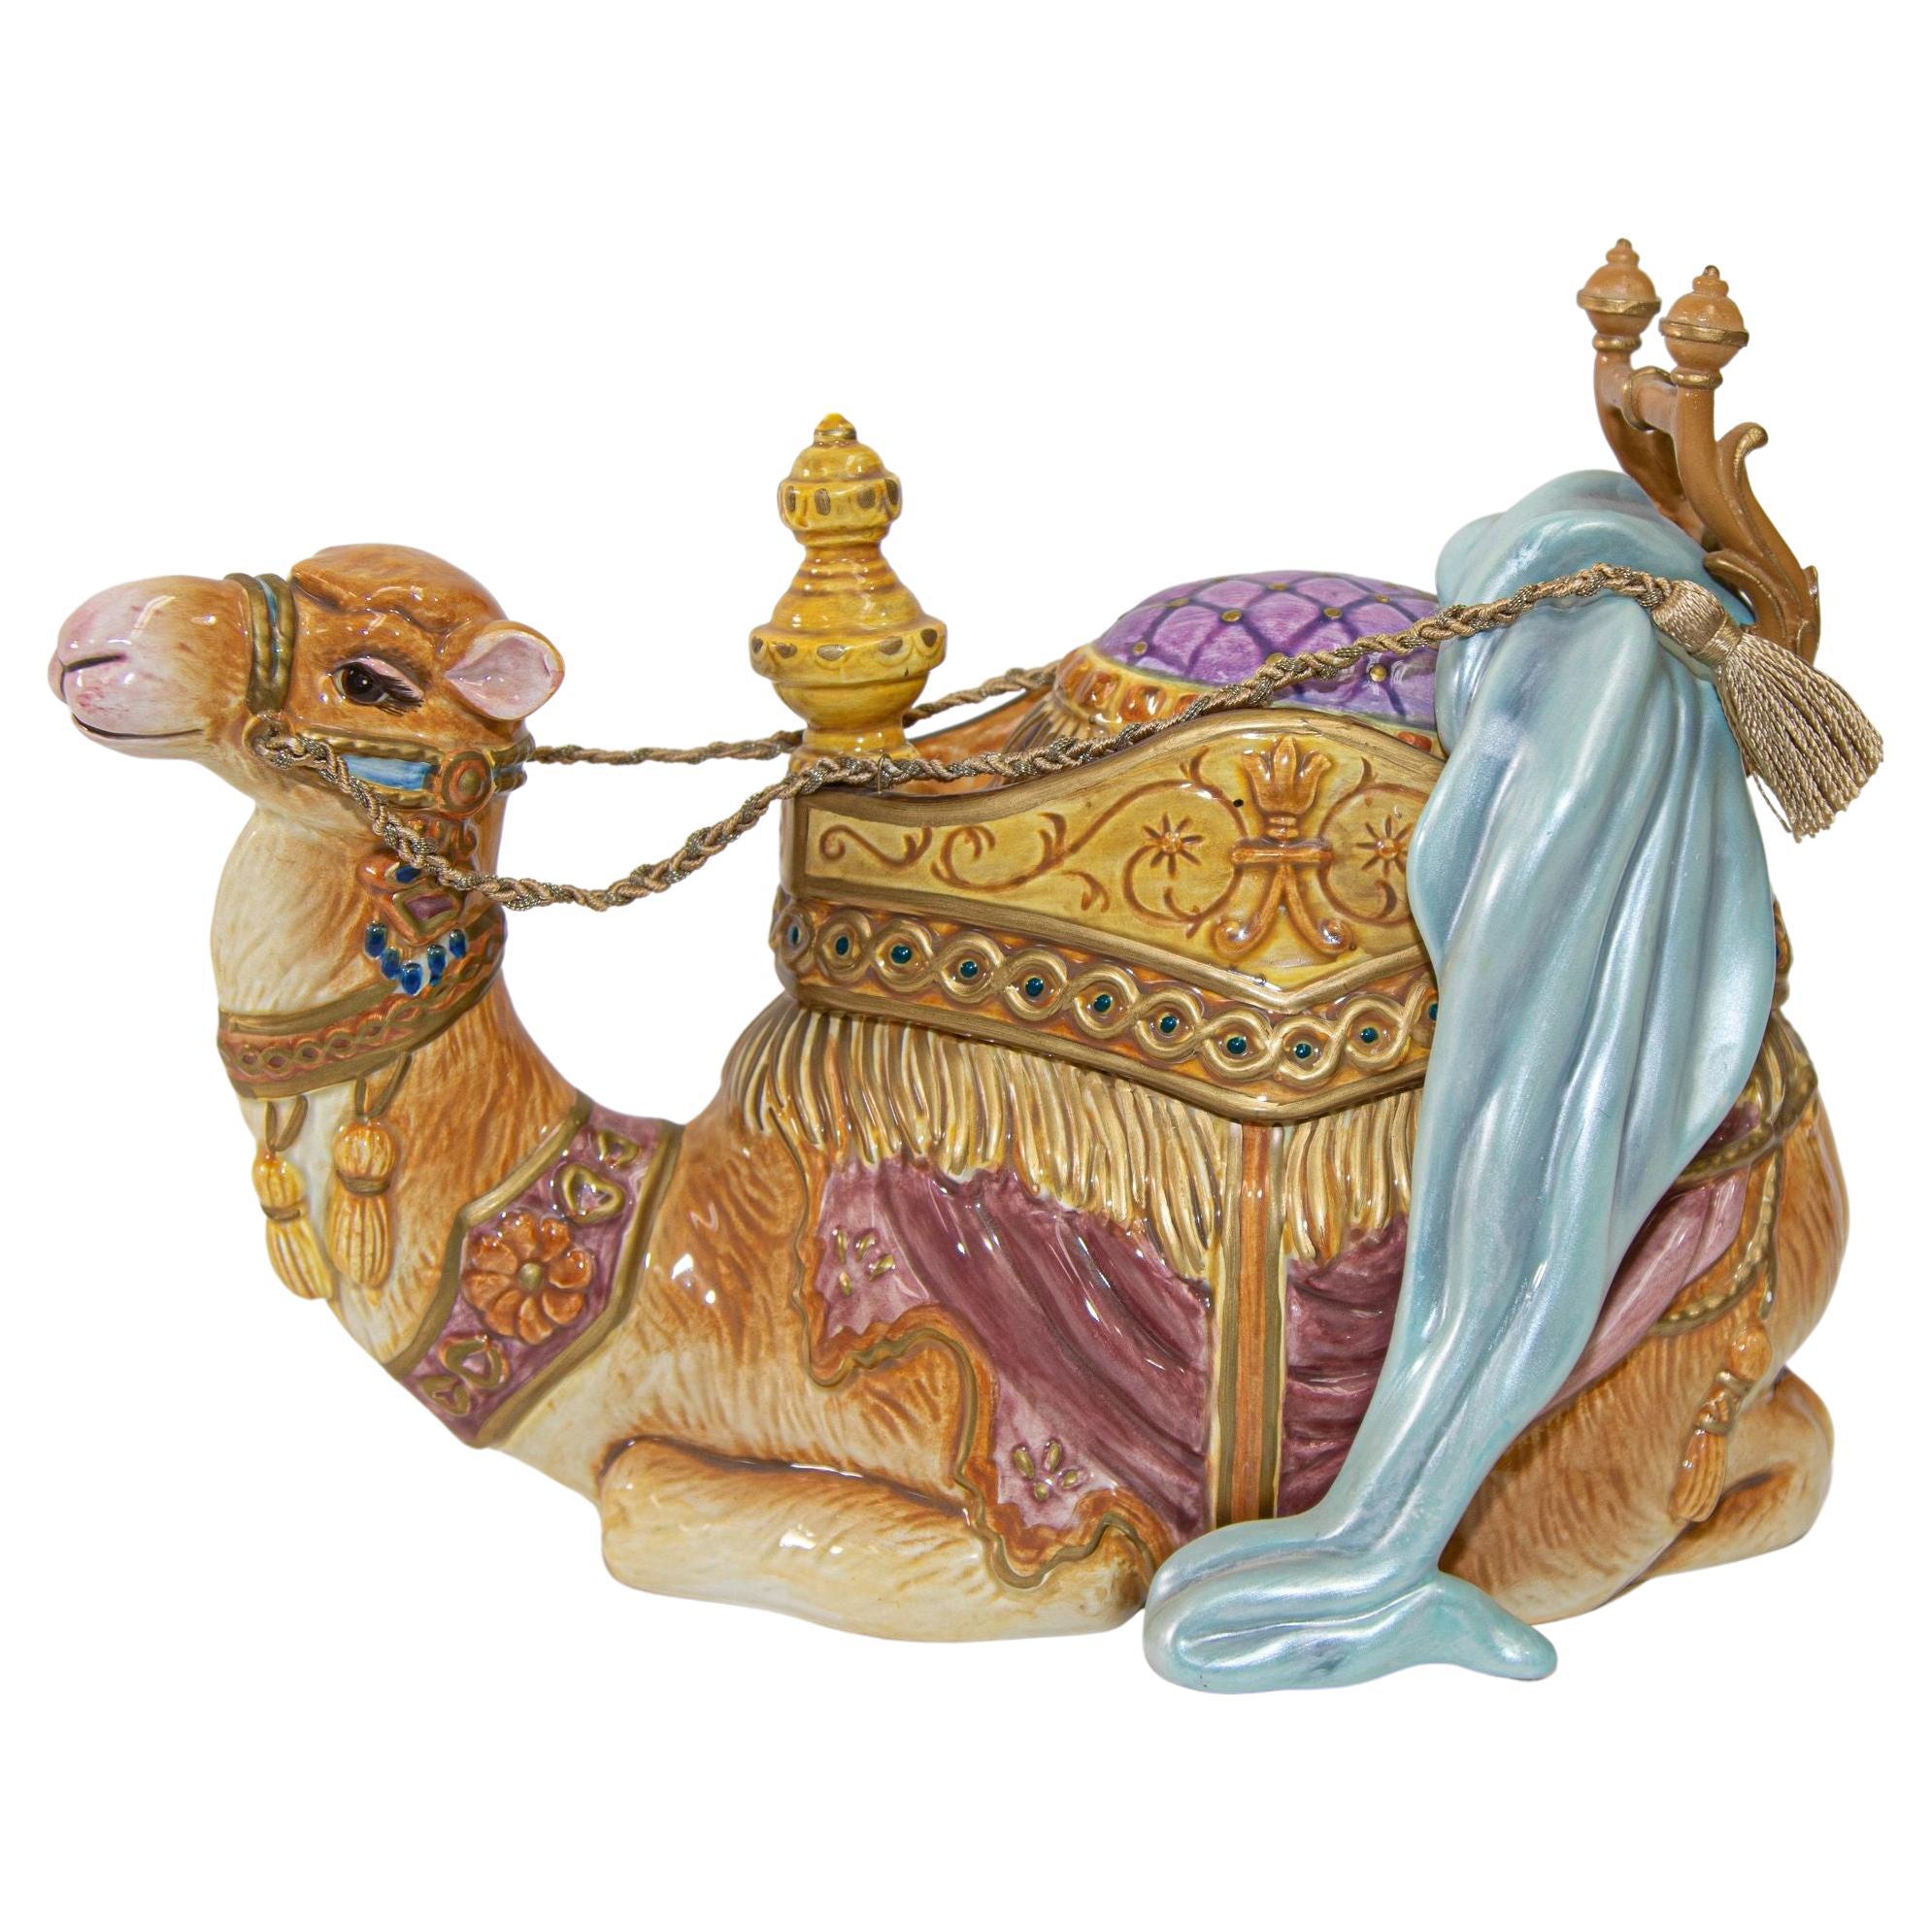 Ruhendes arabisches Kamel aus Porzellan von Fitz und Floyd